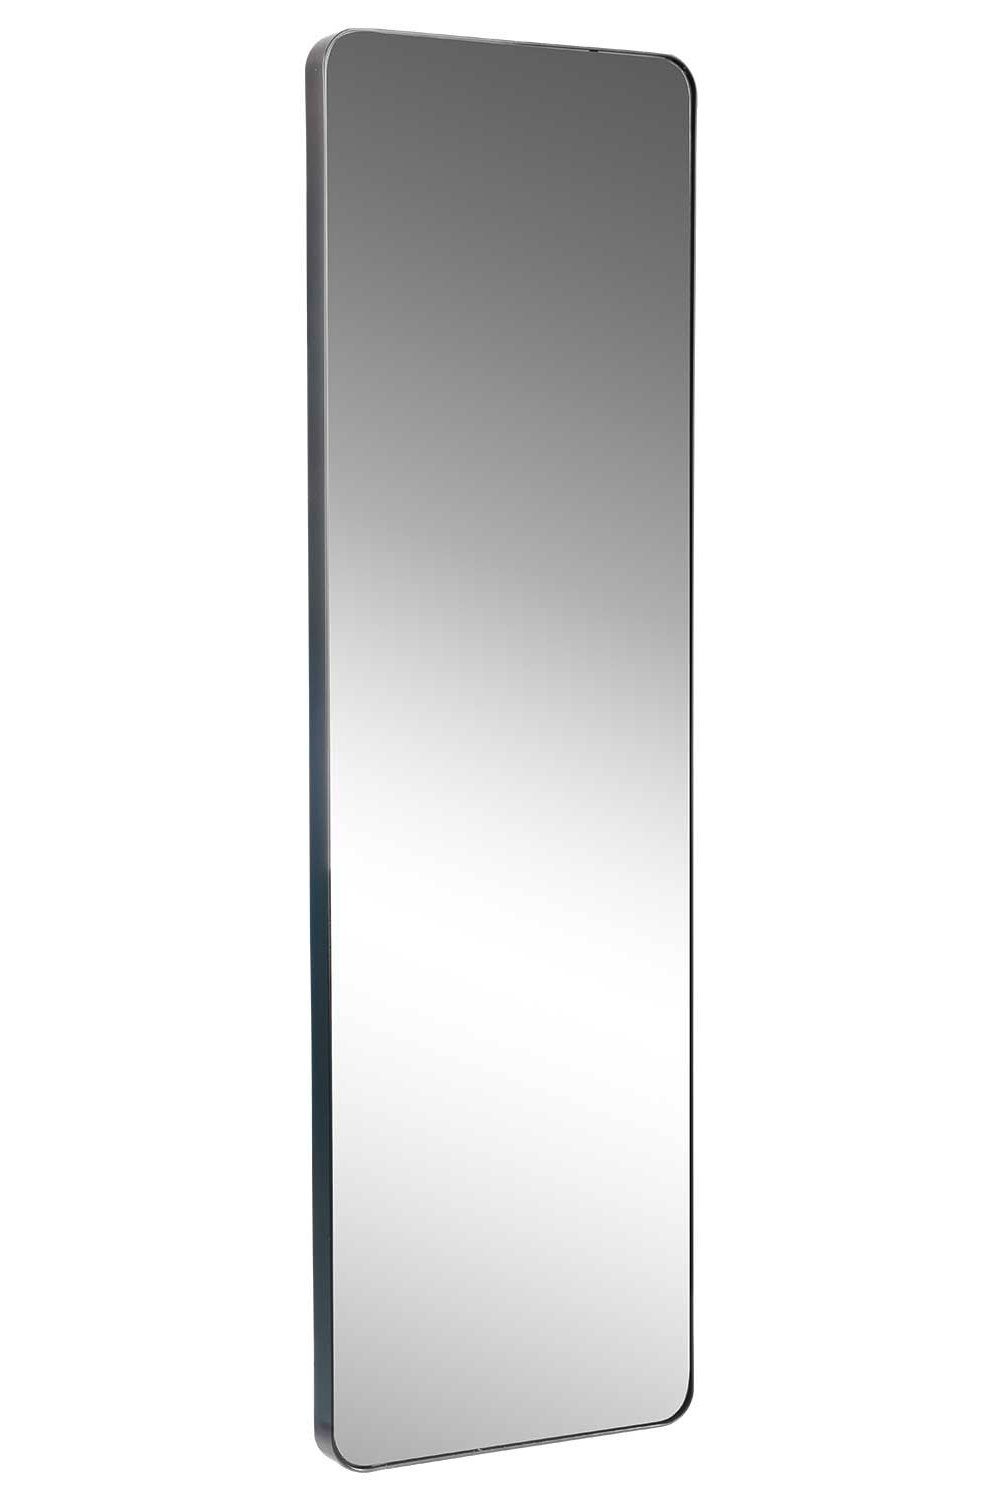 Home4You Spiegel TAINA, B 30 x H 100 cm, Rahmen in Schwarz, Metall, lackierte Rahmenoberfläche